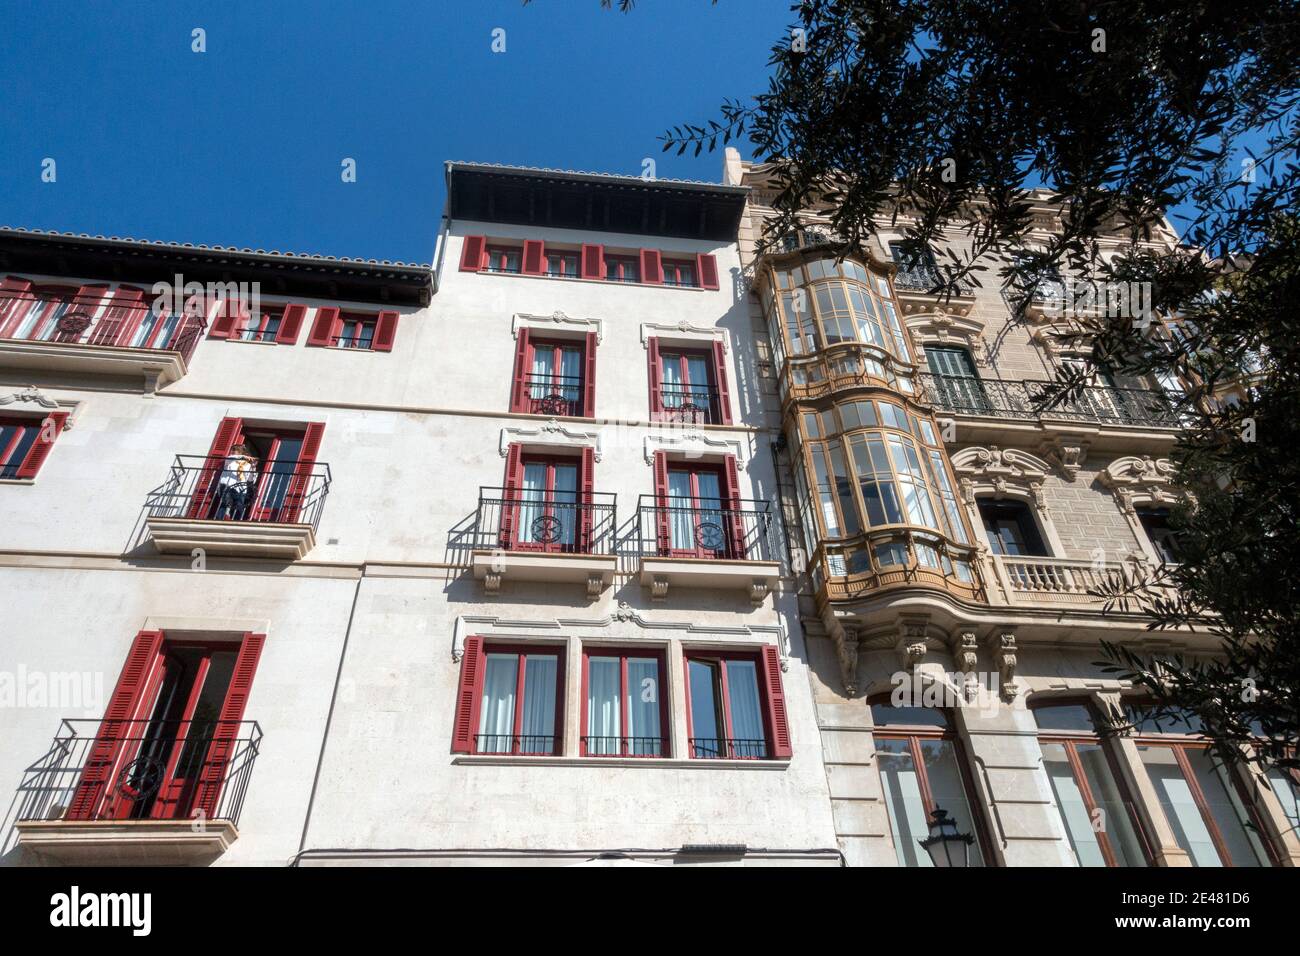 Palma de Mallorca Old Town Windows facade Stock Photo